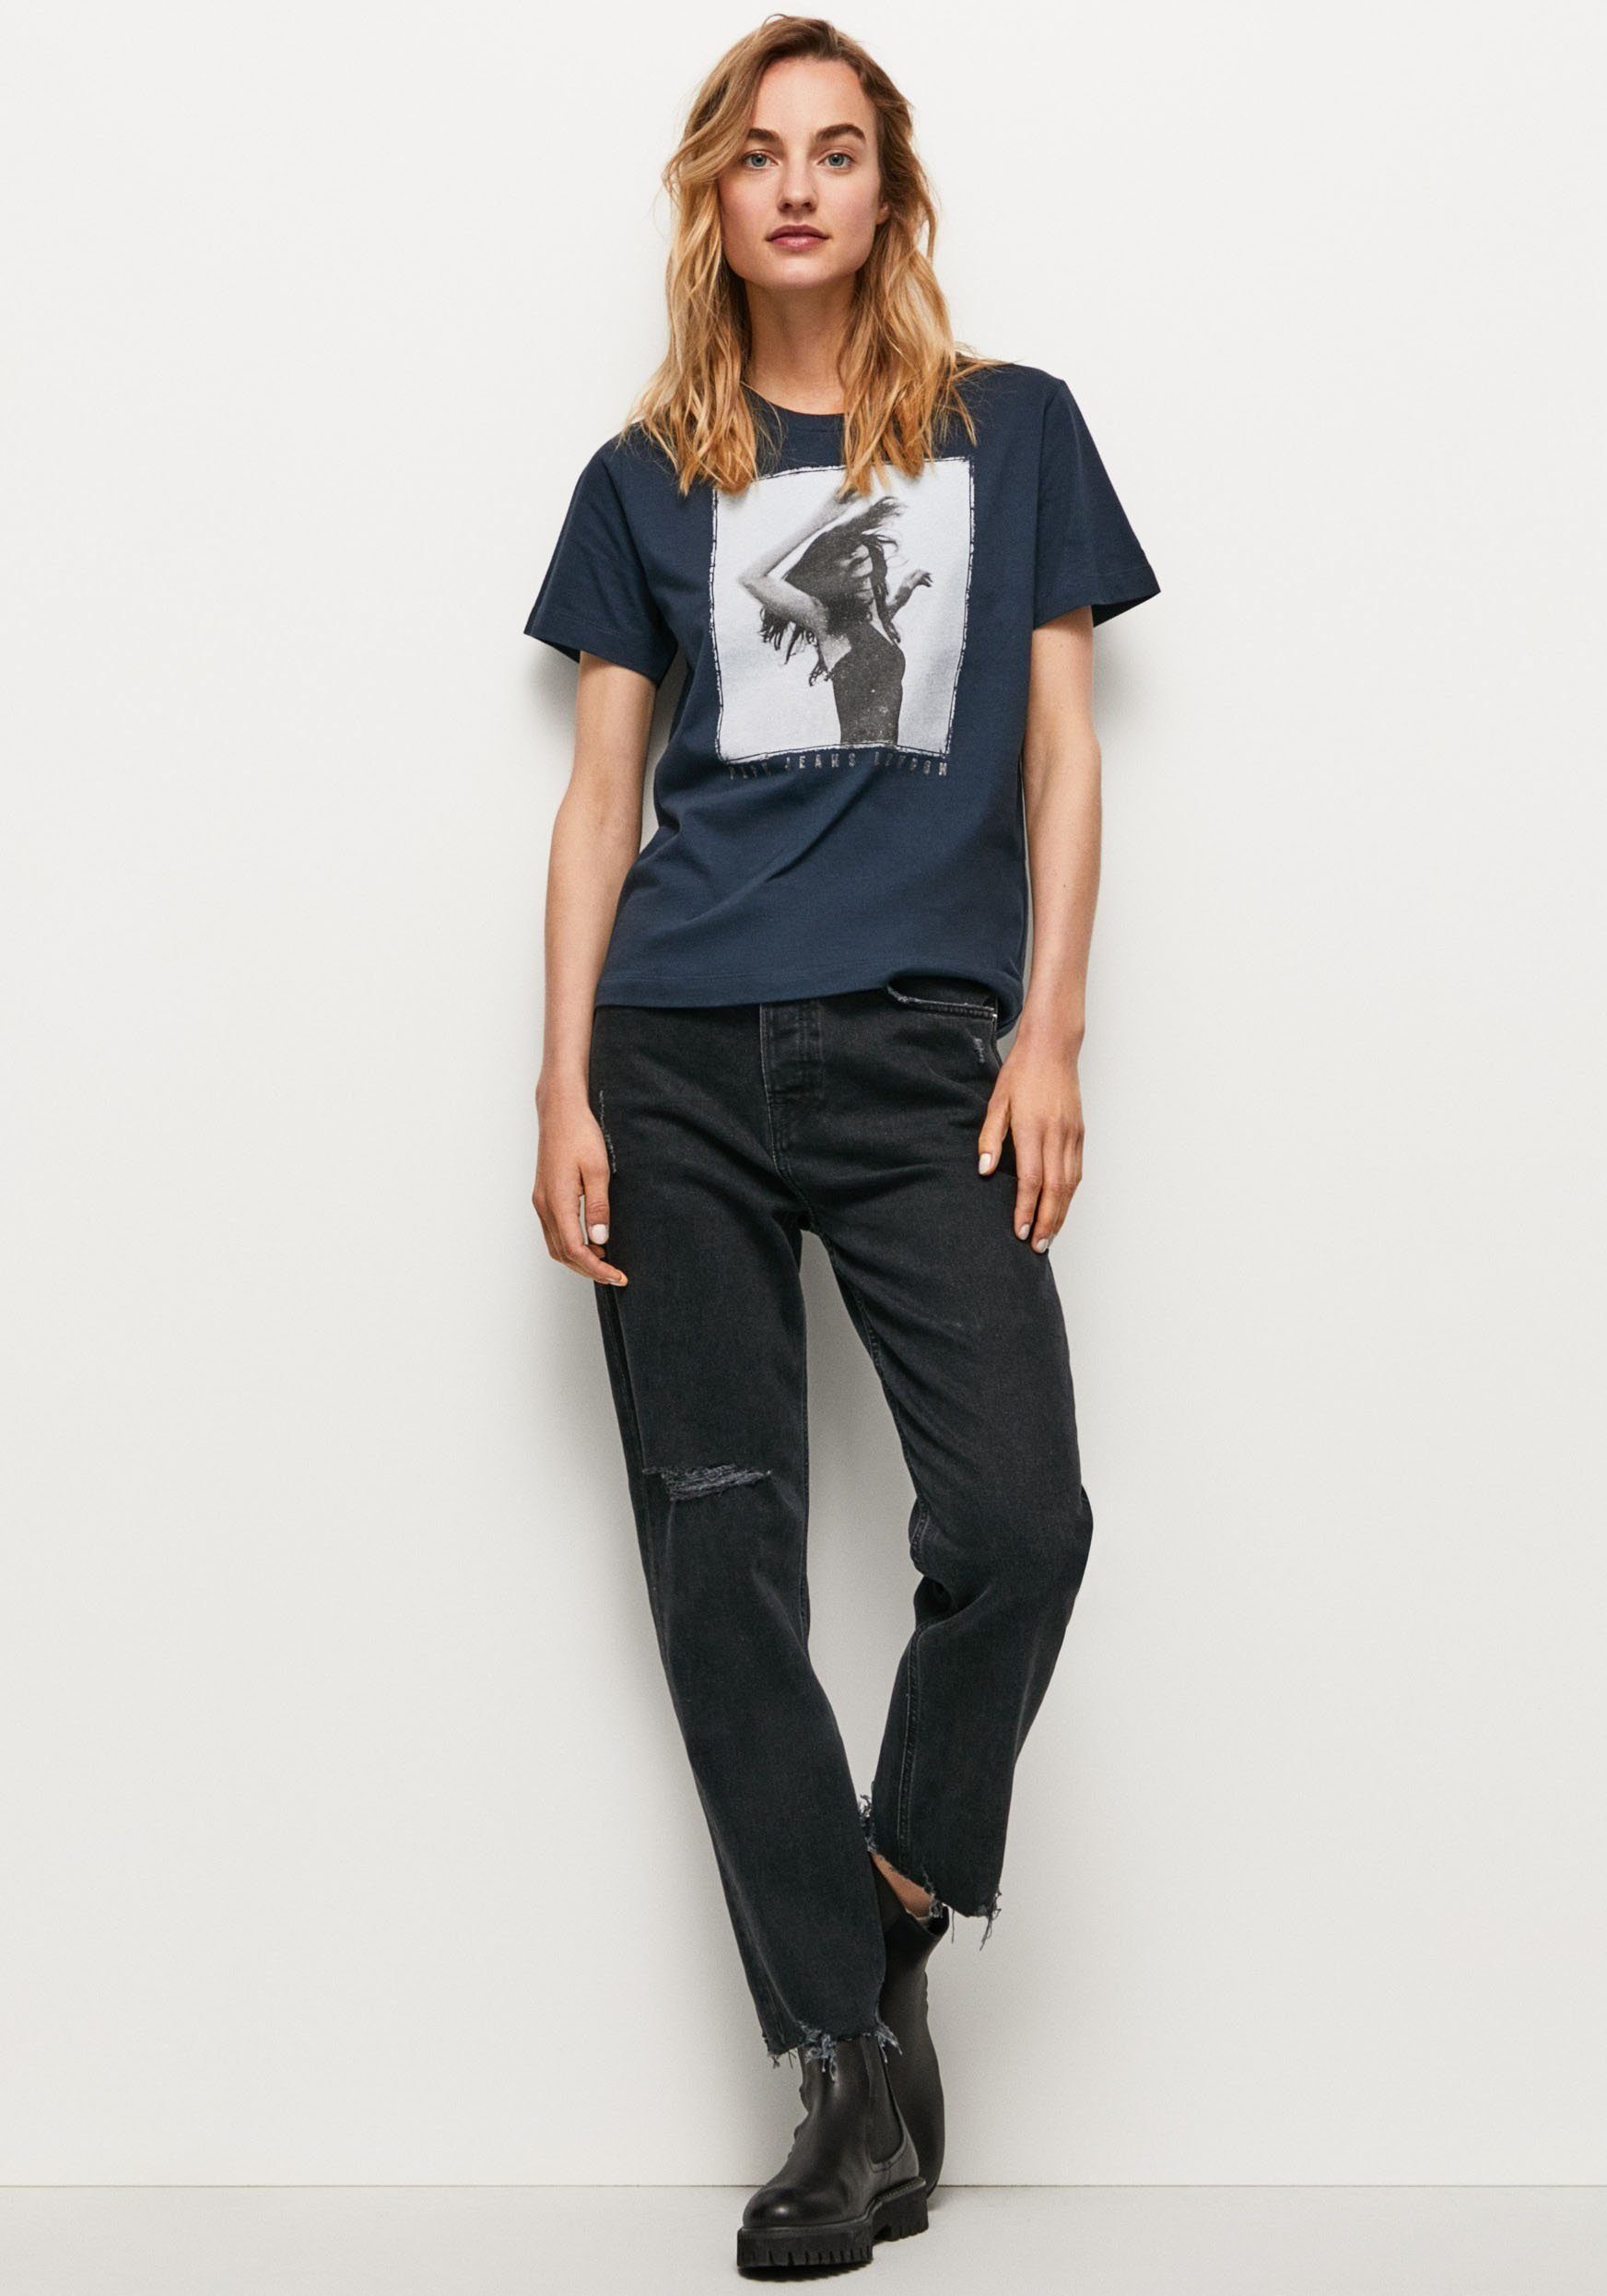 SONYA in mit T-Shirt 594DULWICH Frontprint markentypischem Jeans und figurbetonter Passform tollem Pepe